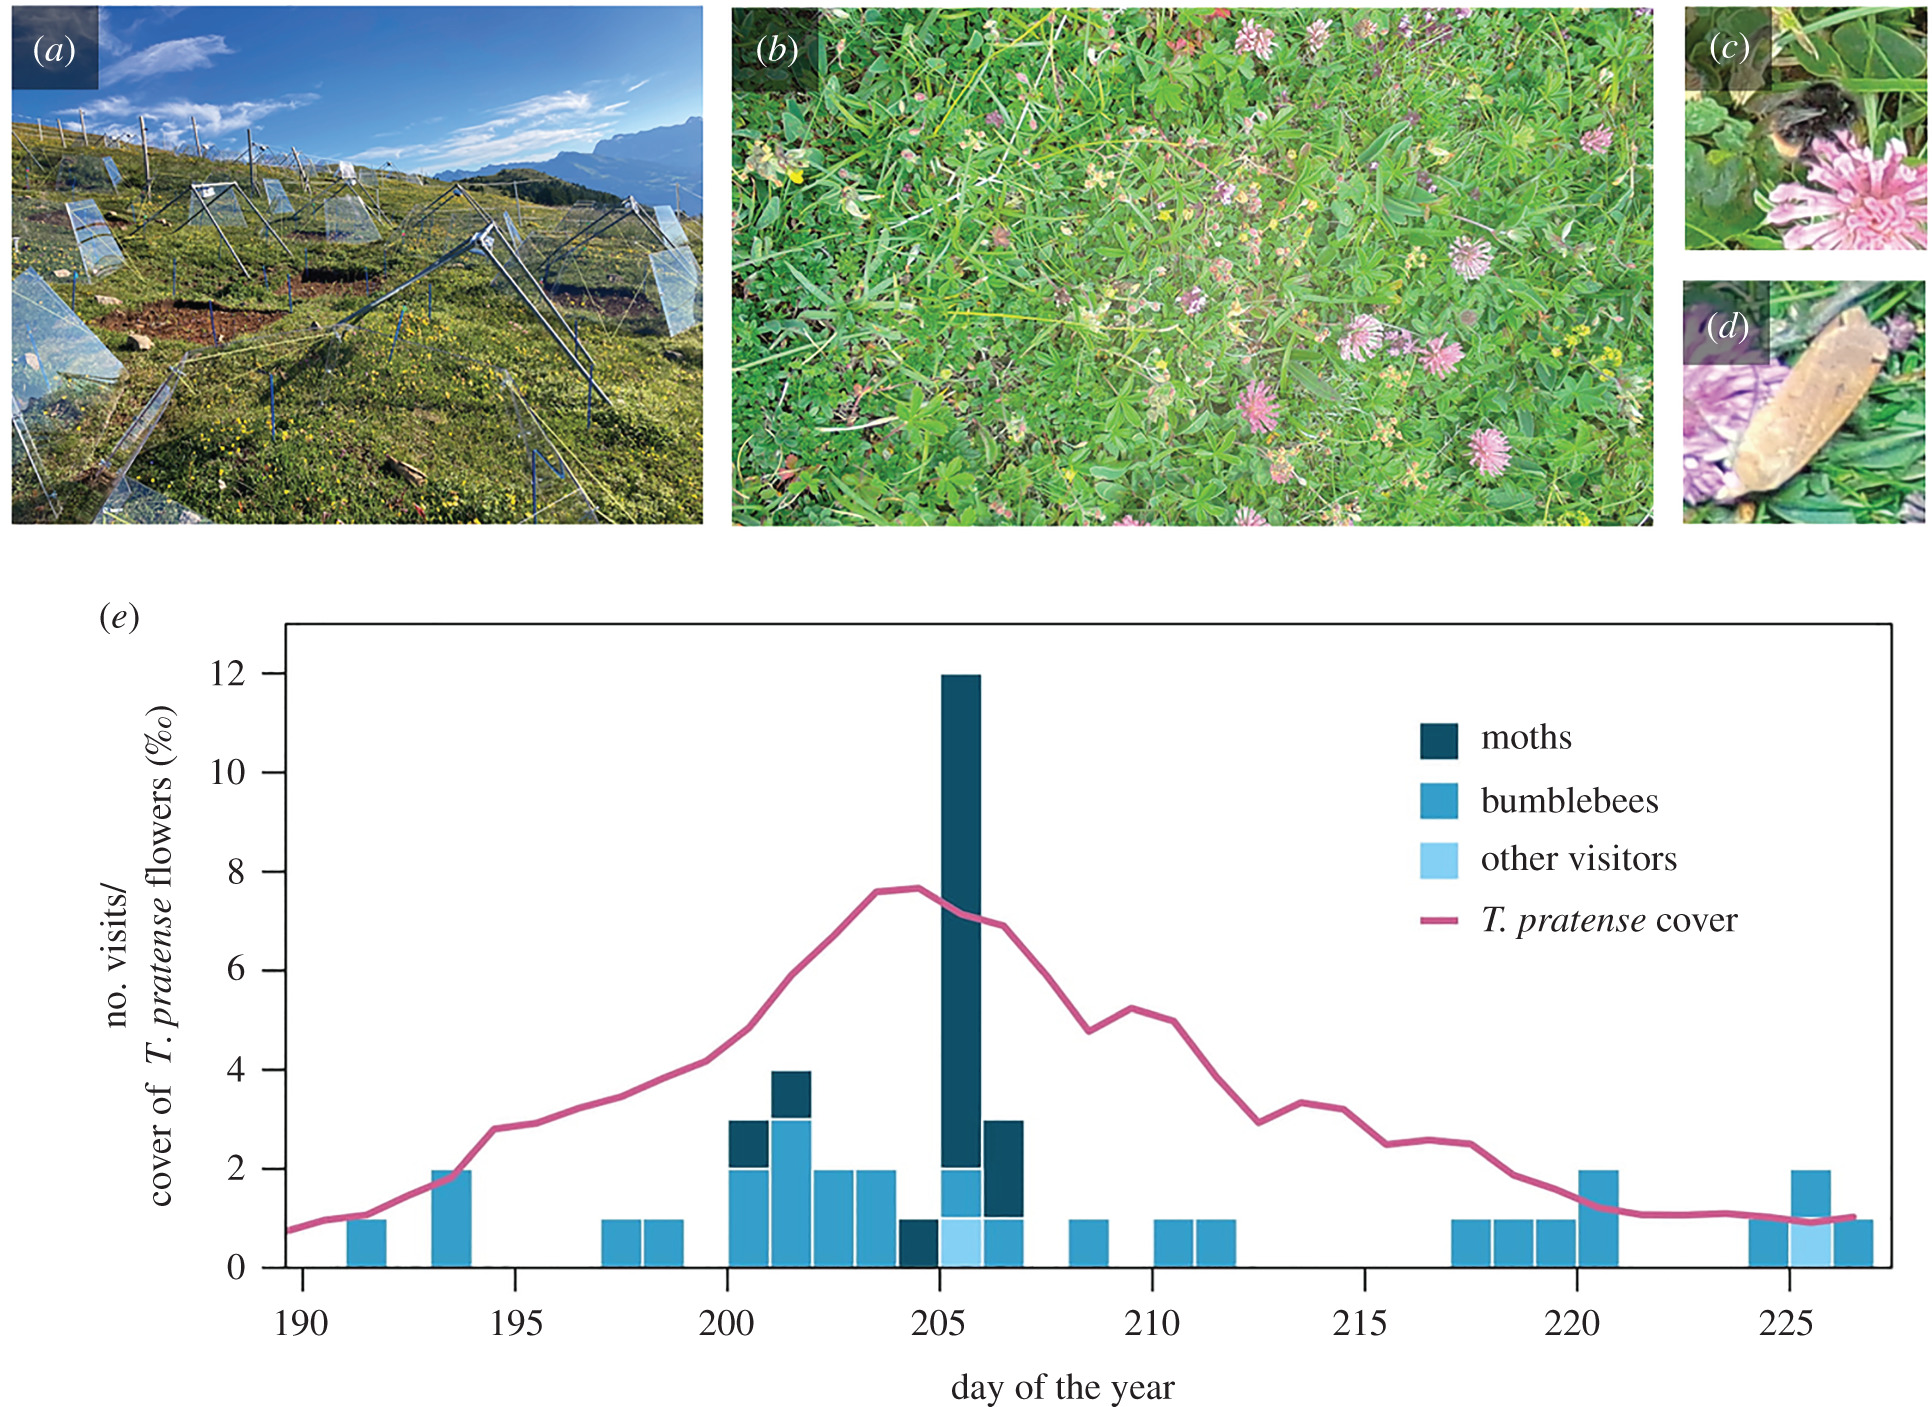 a:調査場所、b:撮影された画像、c・d: マルハナバチとガの訪花、e: ガの訪花が多いほど、ムラサキツメクサの量も増える